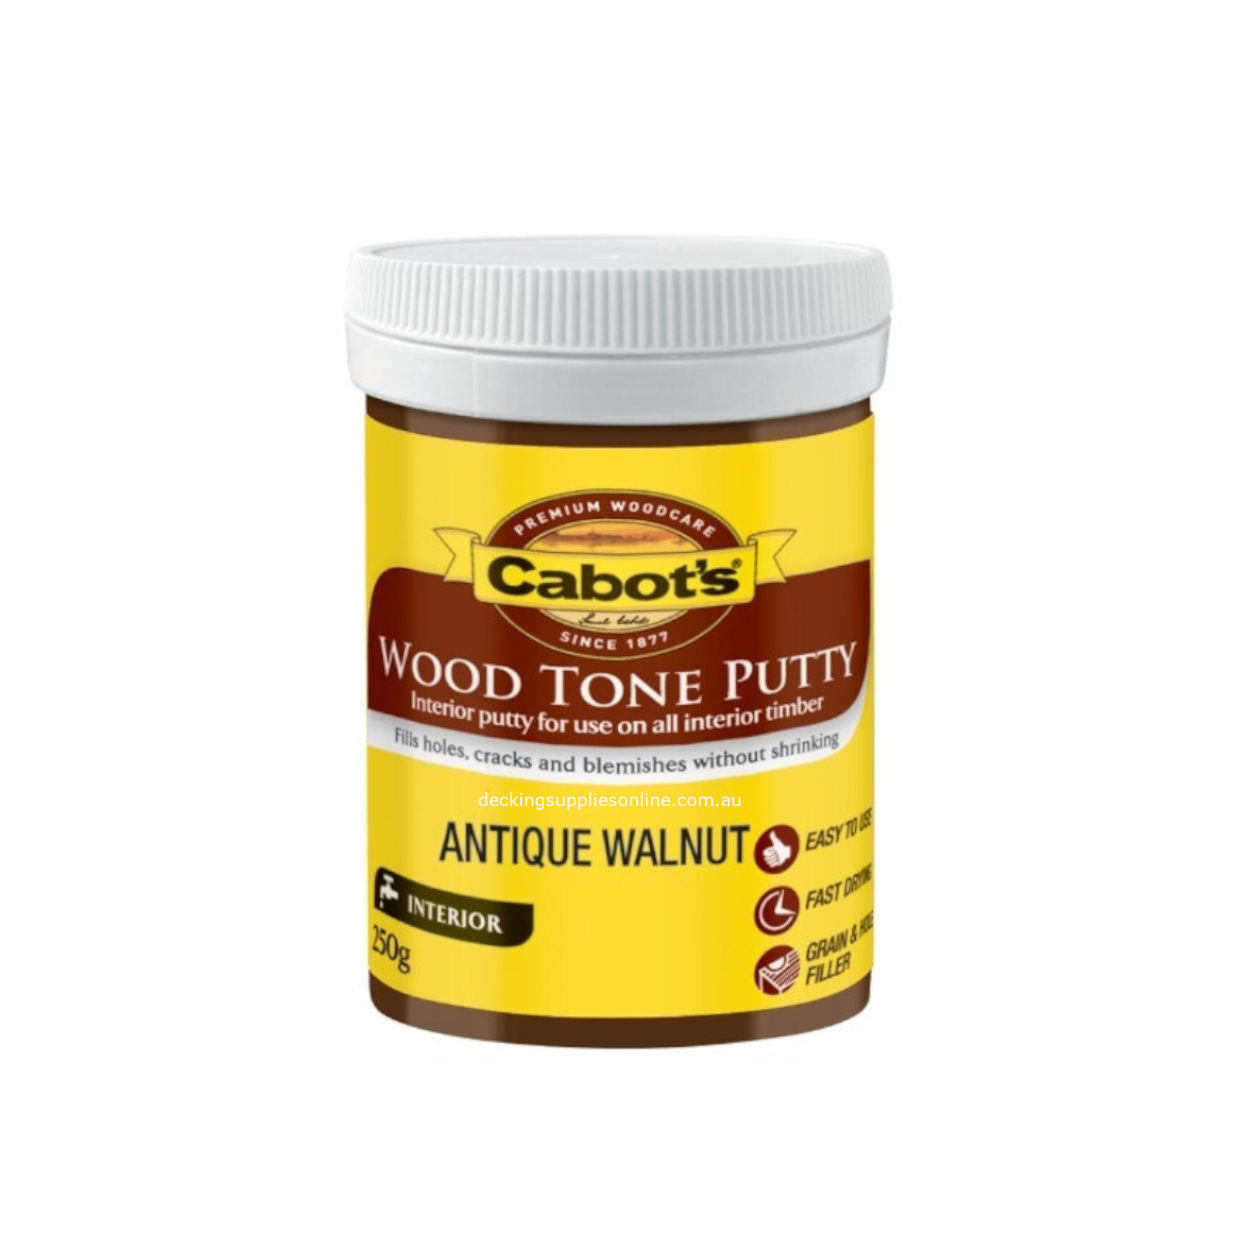 CABOTS_Woodtone_Putty_Antique_Walnut_250g_Decking_Supplies_Online